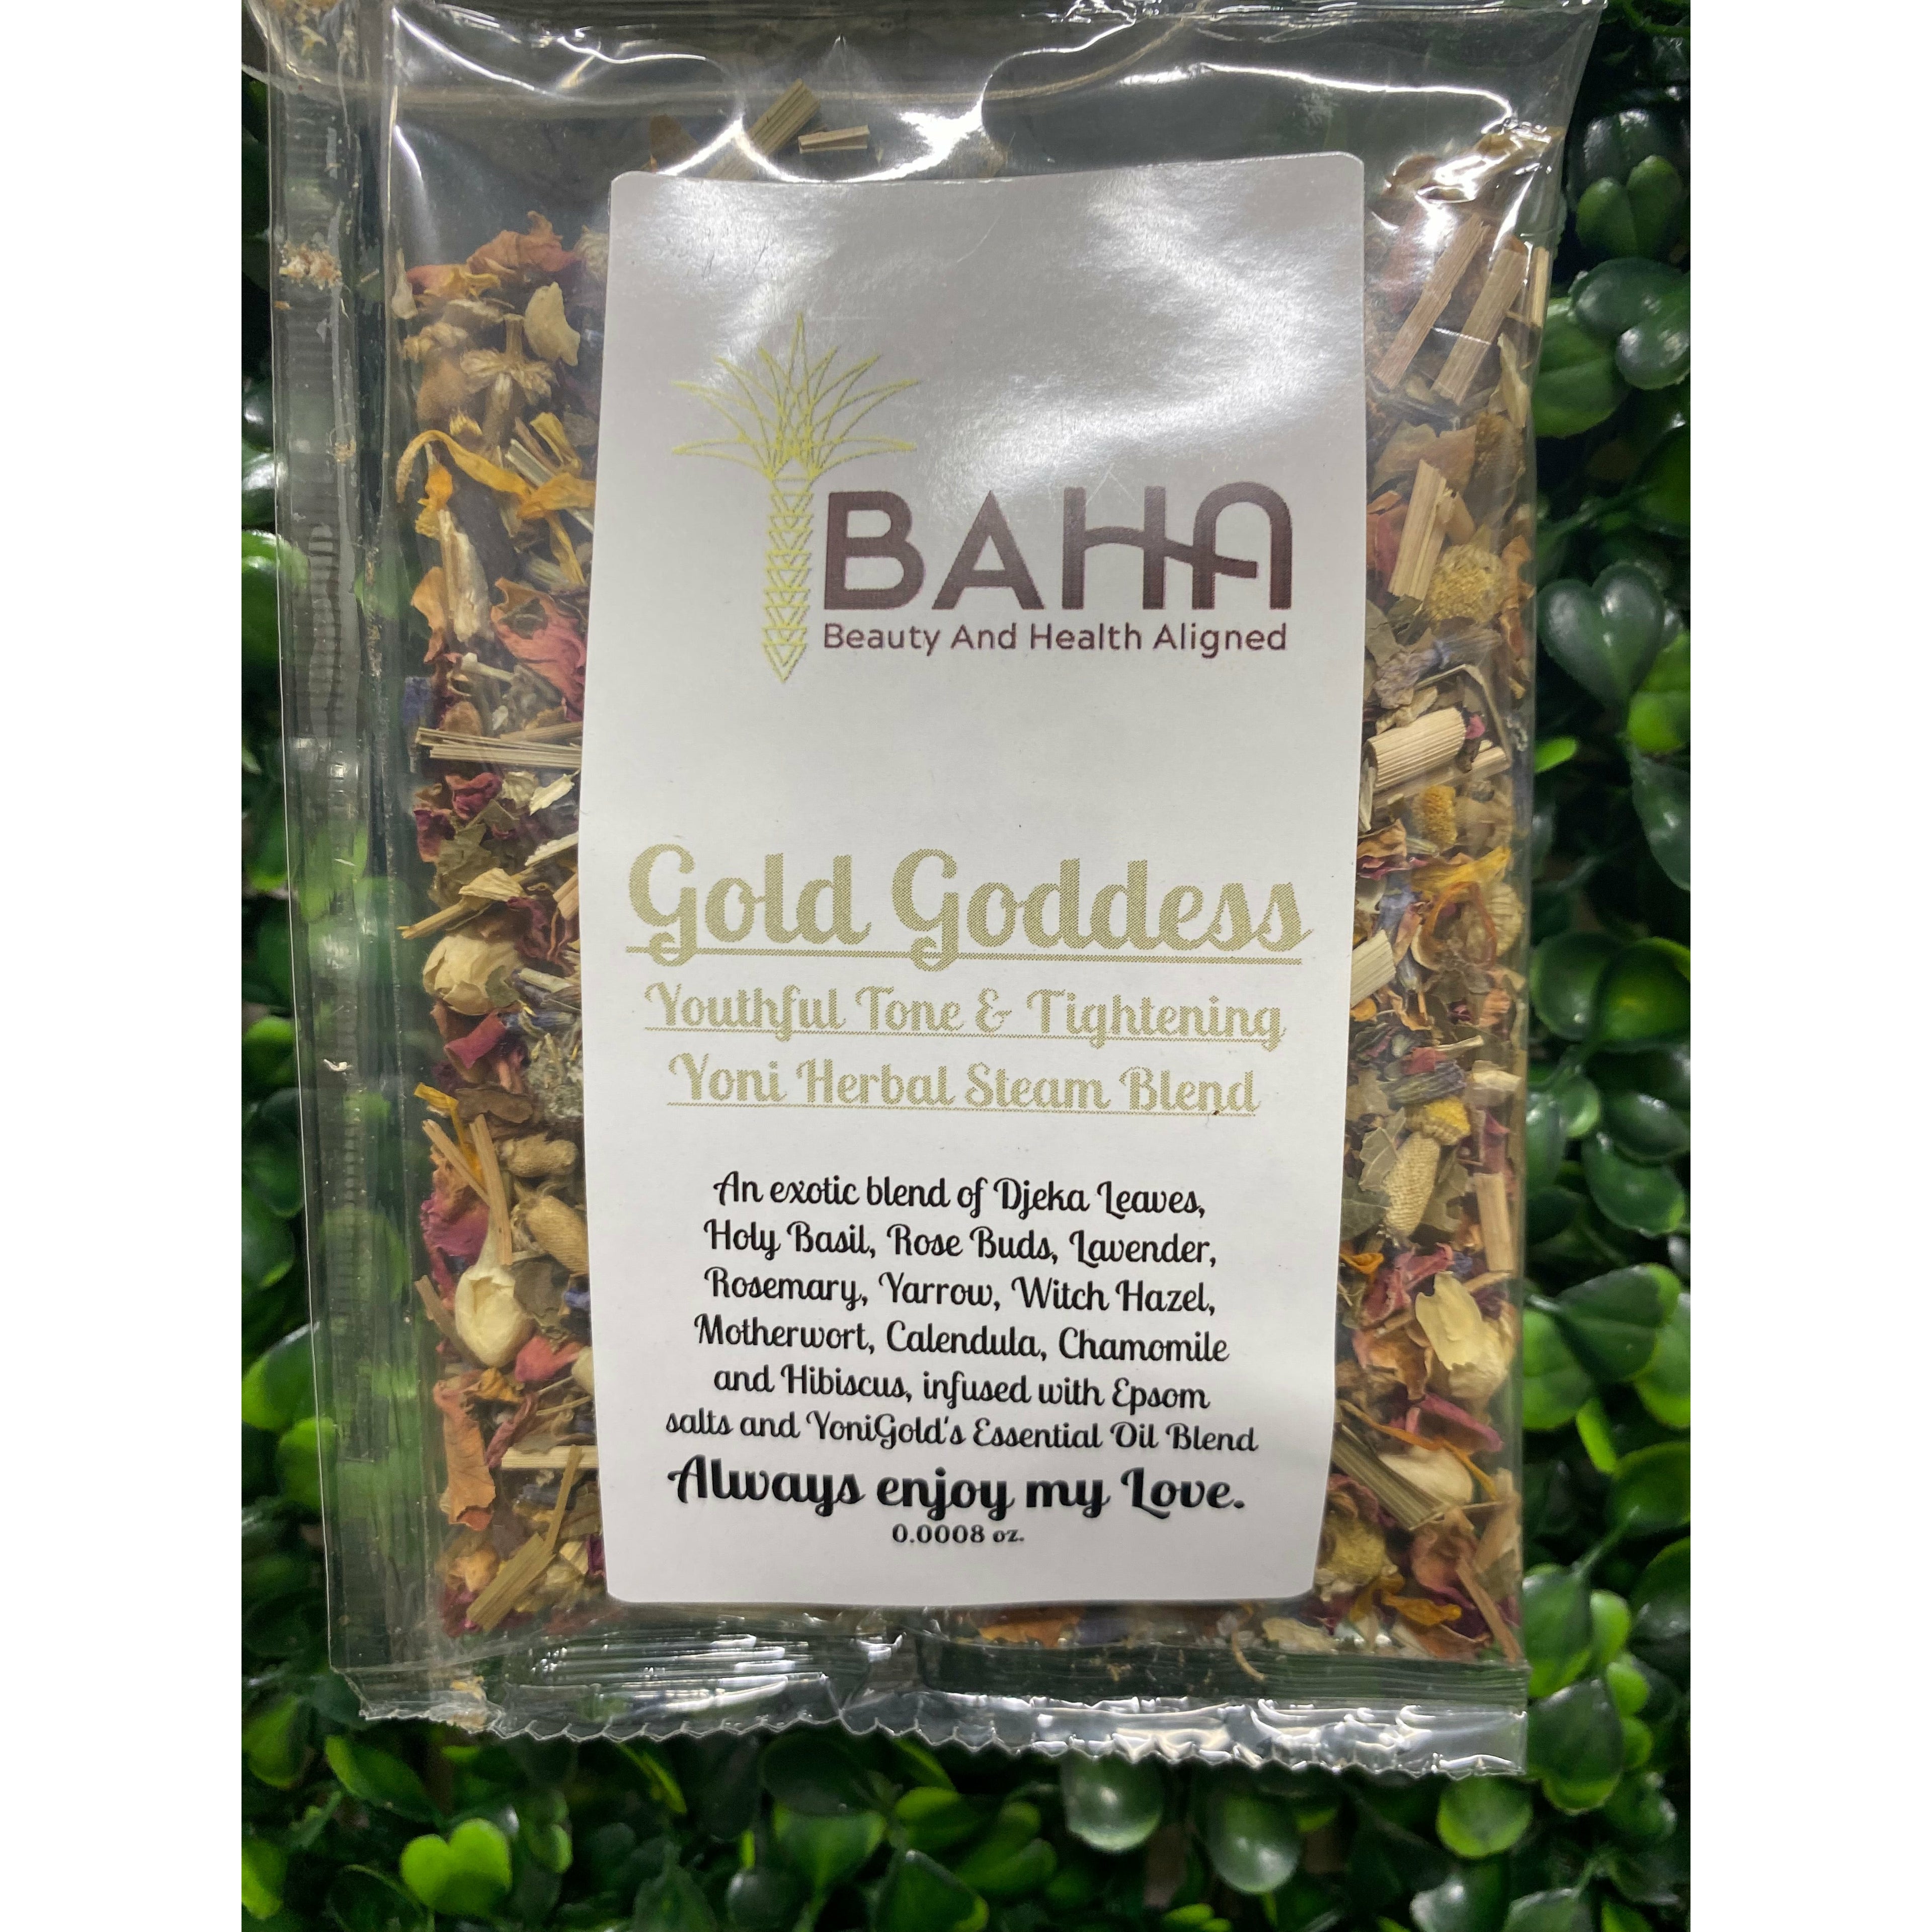 BAHA Gold Goddess Herb Blend